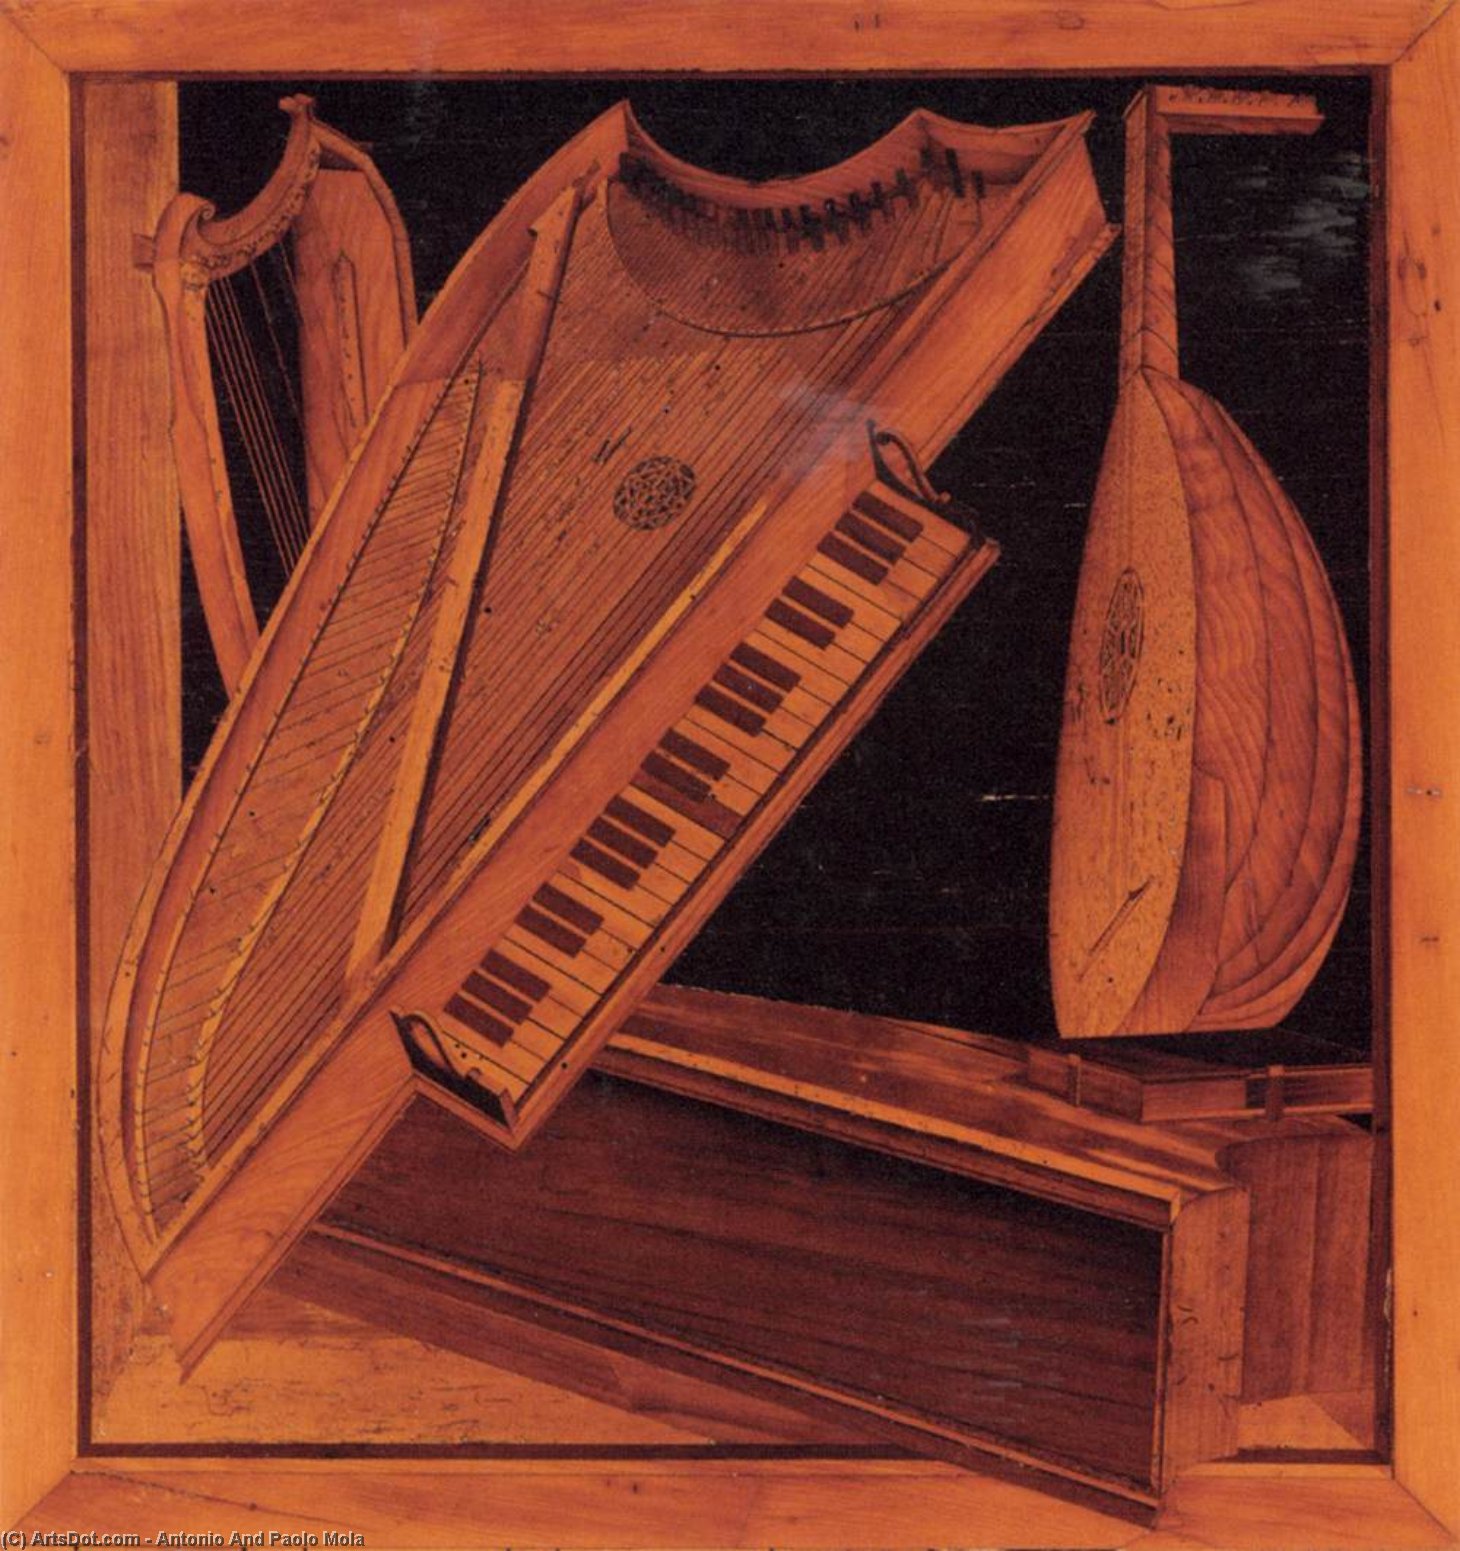 Wikioo.org - Bách khoa toàn thư về mỹ thuật - Vẽ tranh, Tác phẩm nghệ thuật Antonio And Paolo Mola - Musical instruments